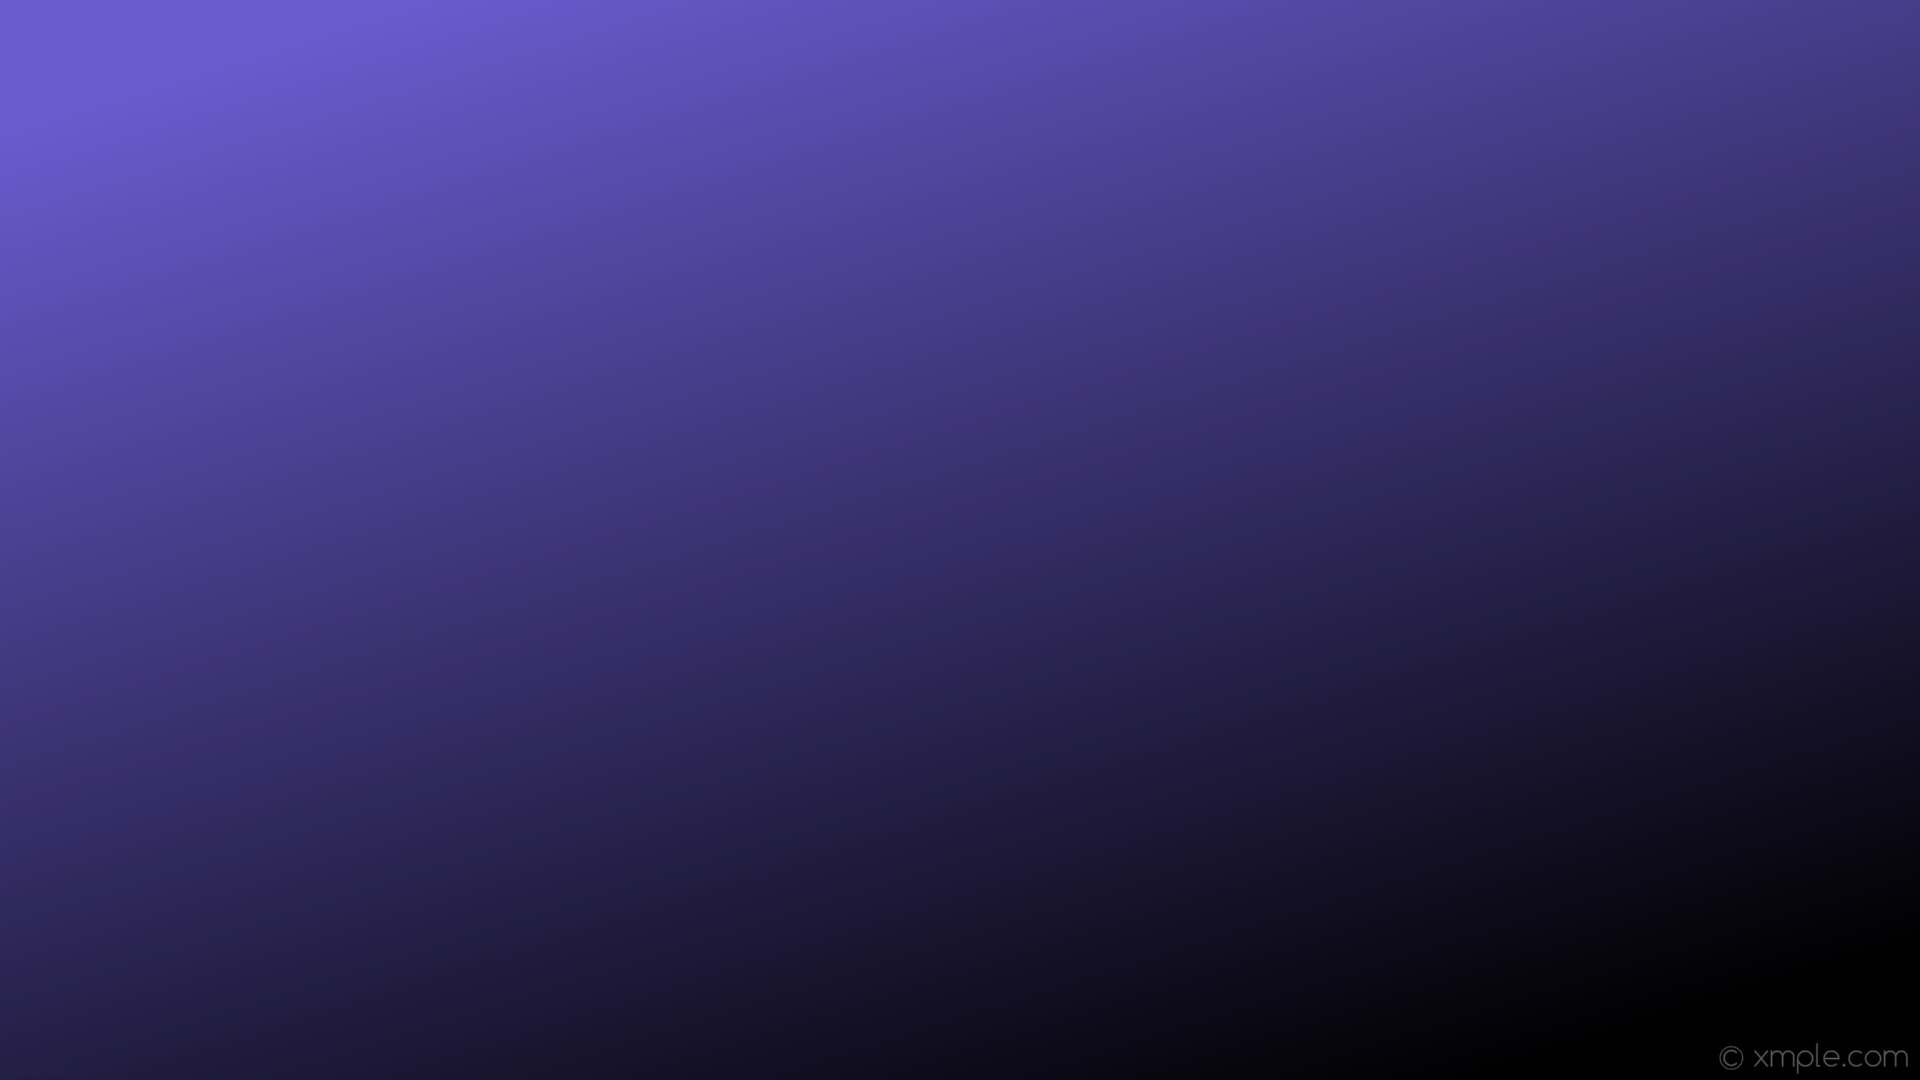 1920x1080 wallpaper gradient purple black linear slate blue #6a5acd #000000 135Â°